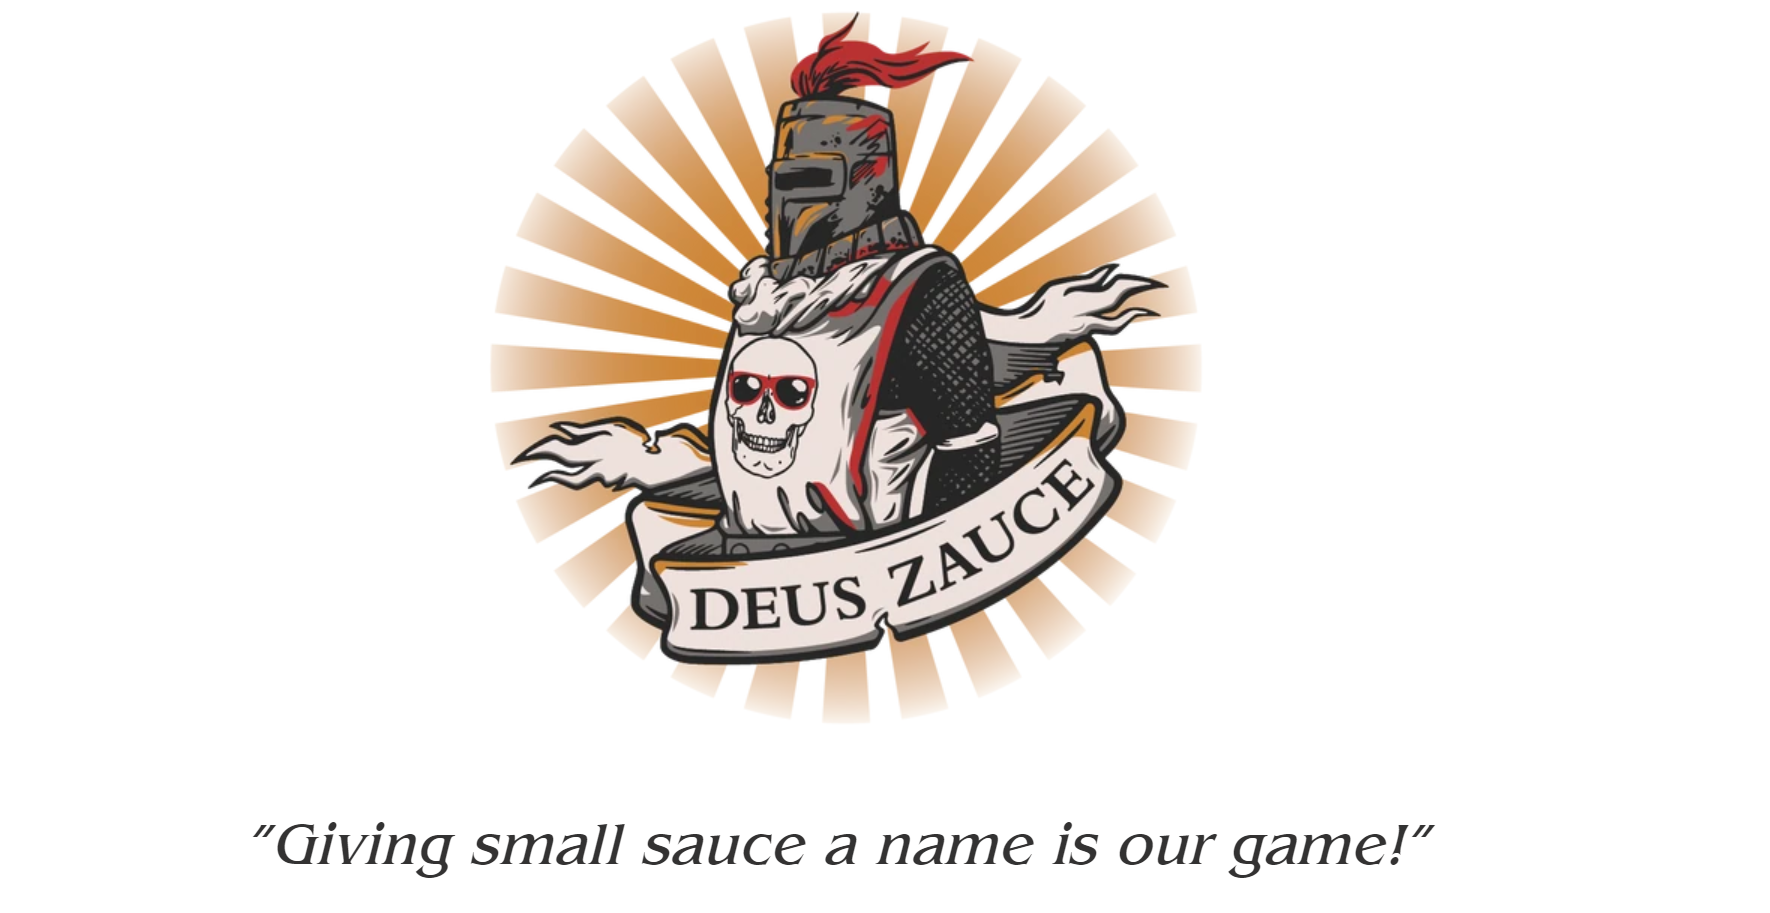 DEUS ZAUCE AWARDS - Entry Fee - Wacky Sauces LLC